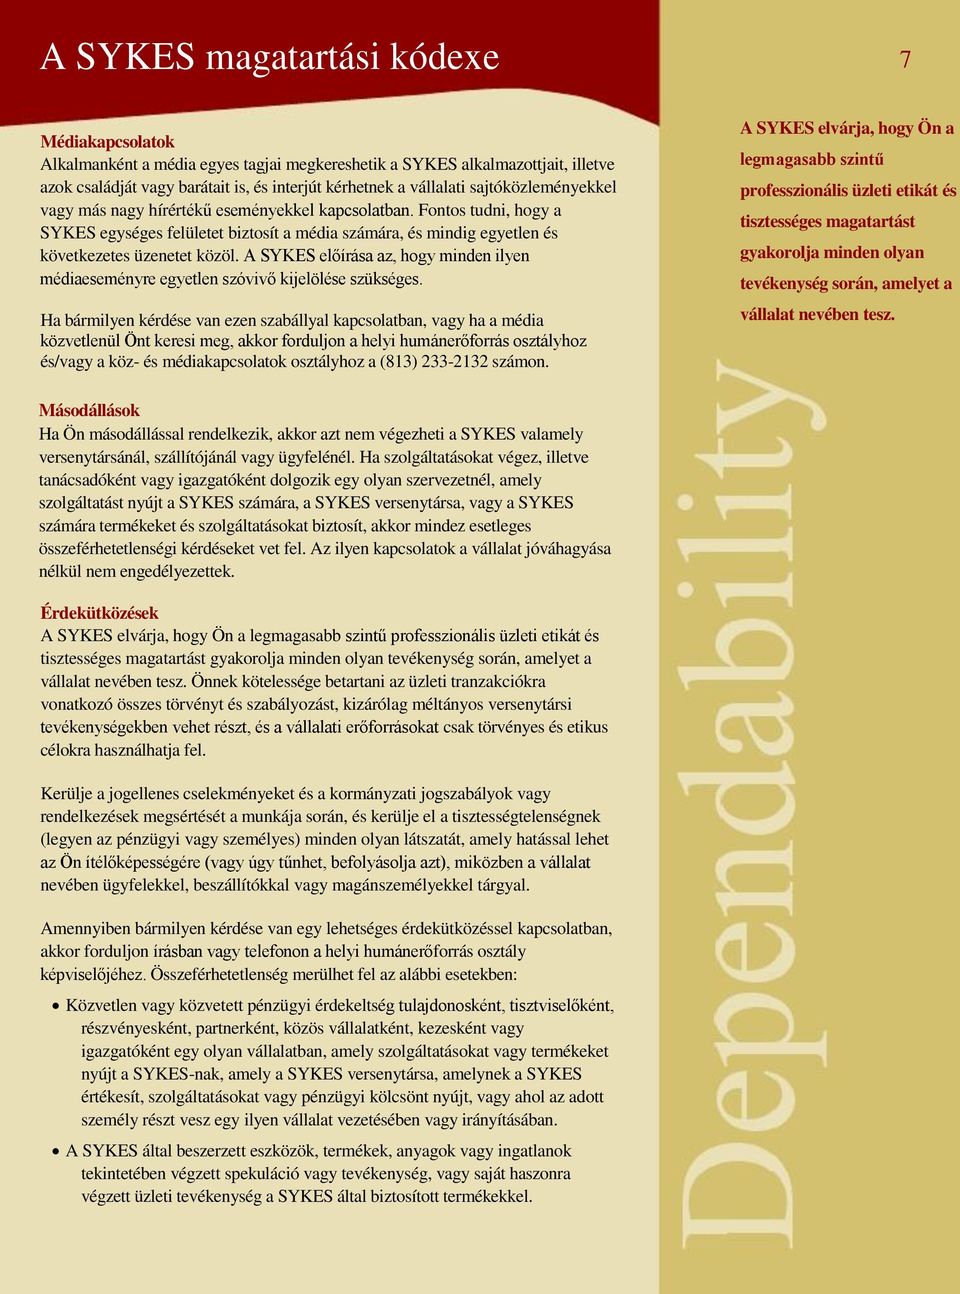 A megfelelőség és hitelesség alapelvei a SYKES-nál - PDF Free Download